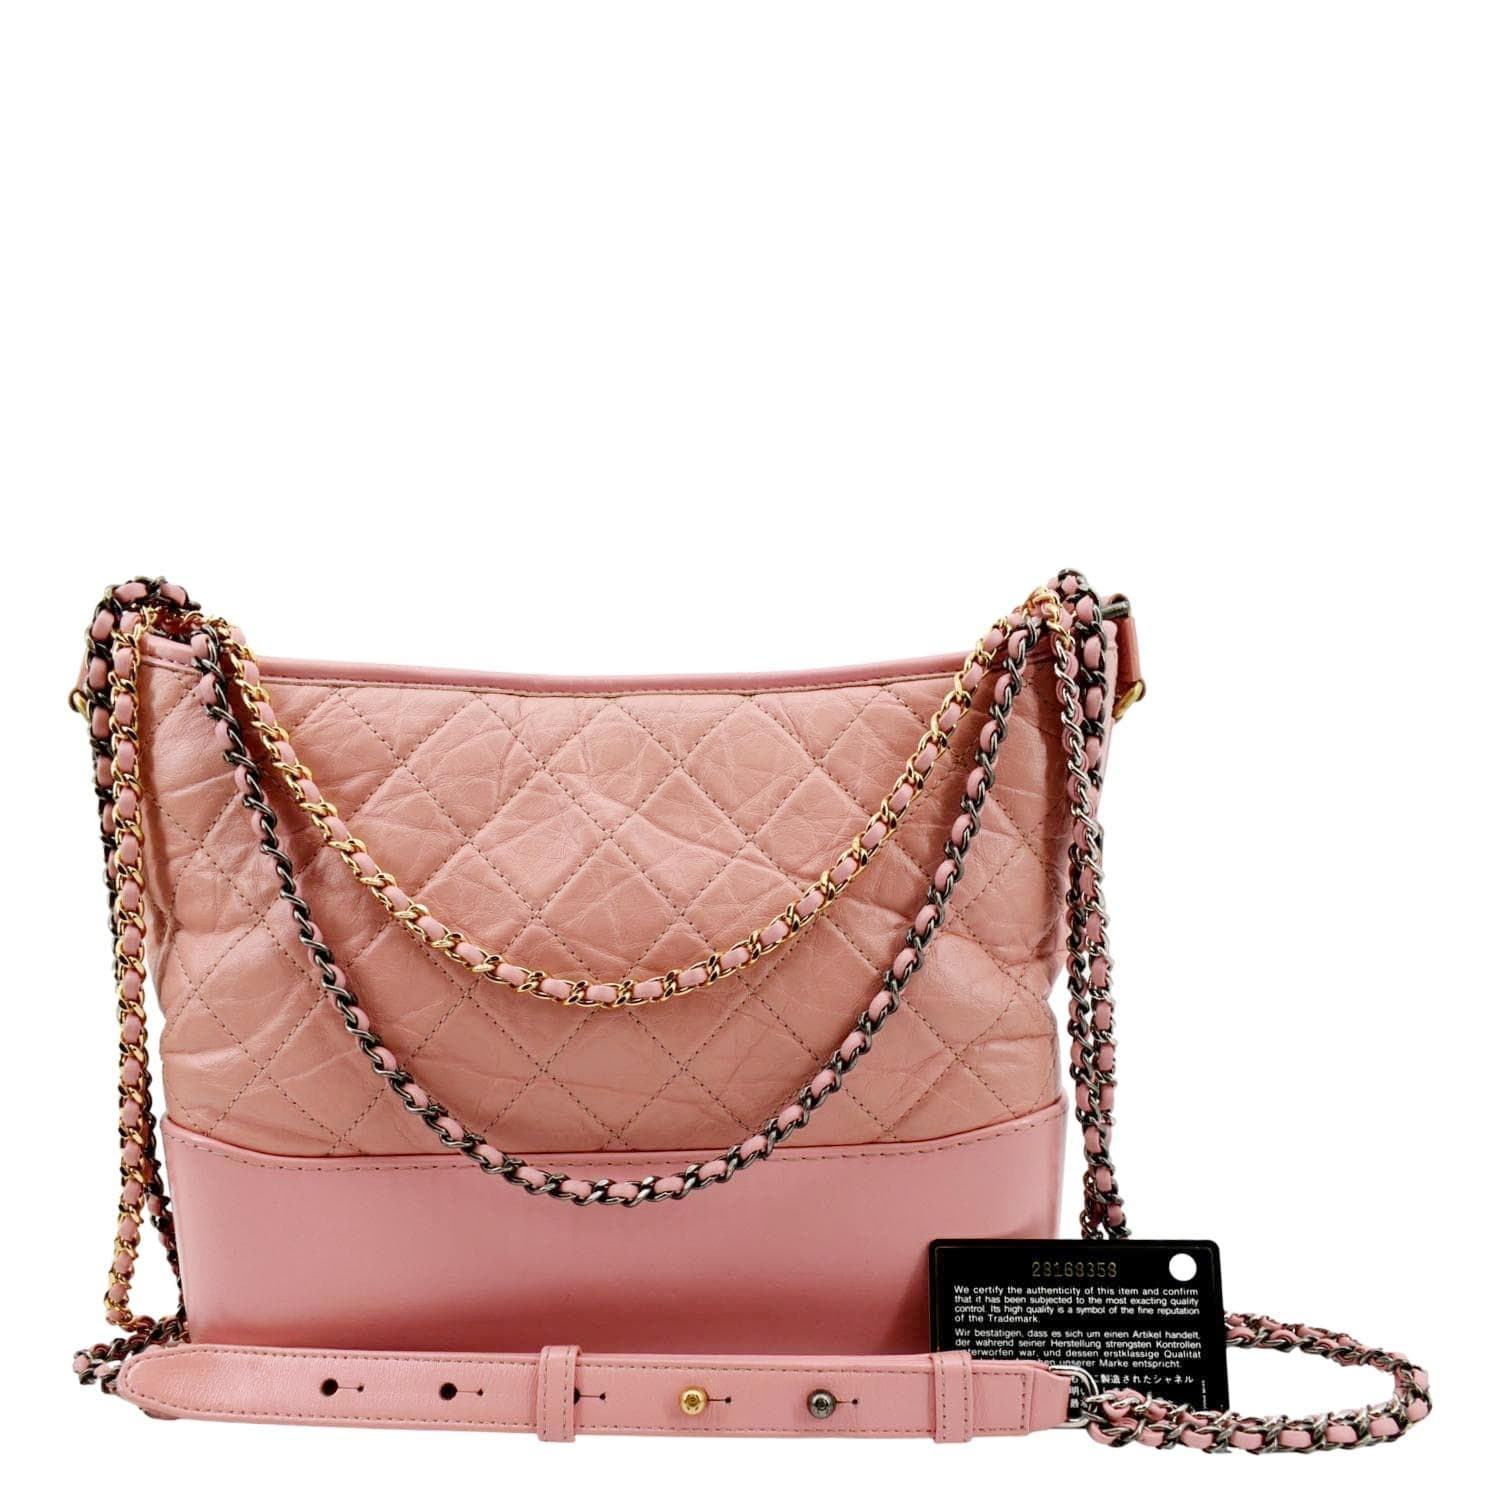 Chanel Gabrielle Medium Aged Calfskin Leather Shoulder Bag Pink